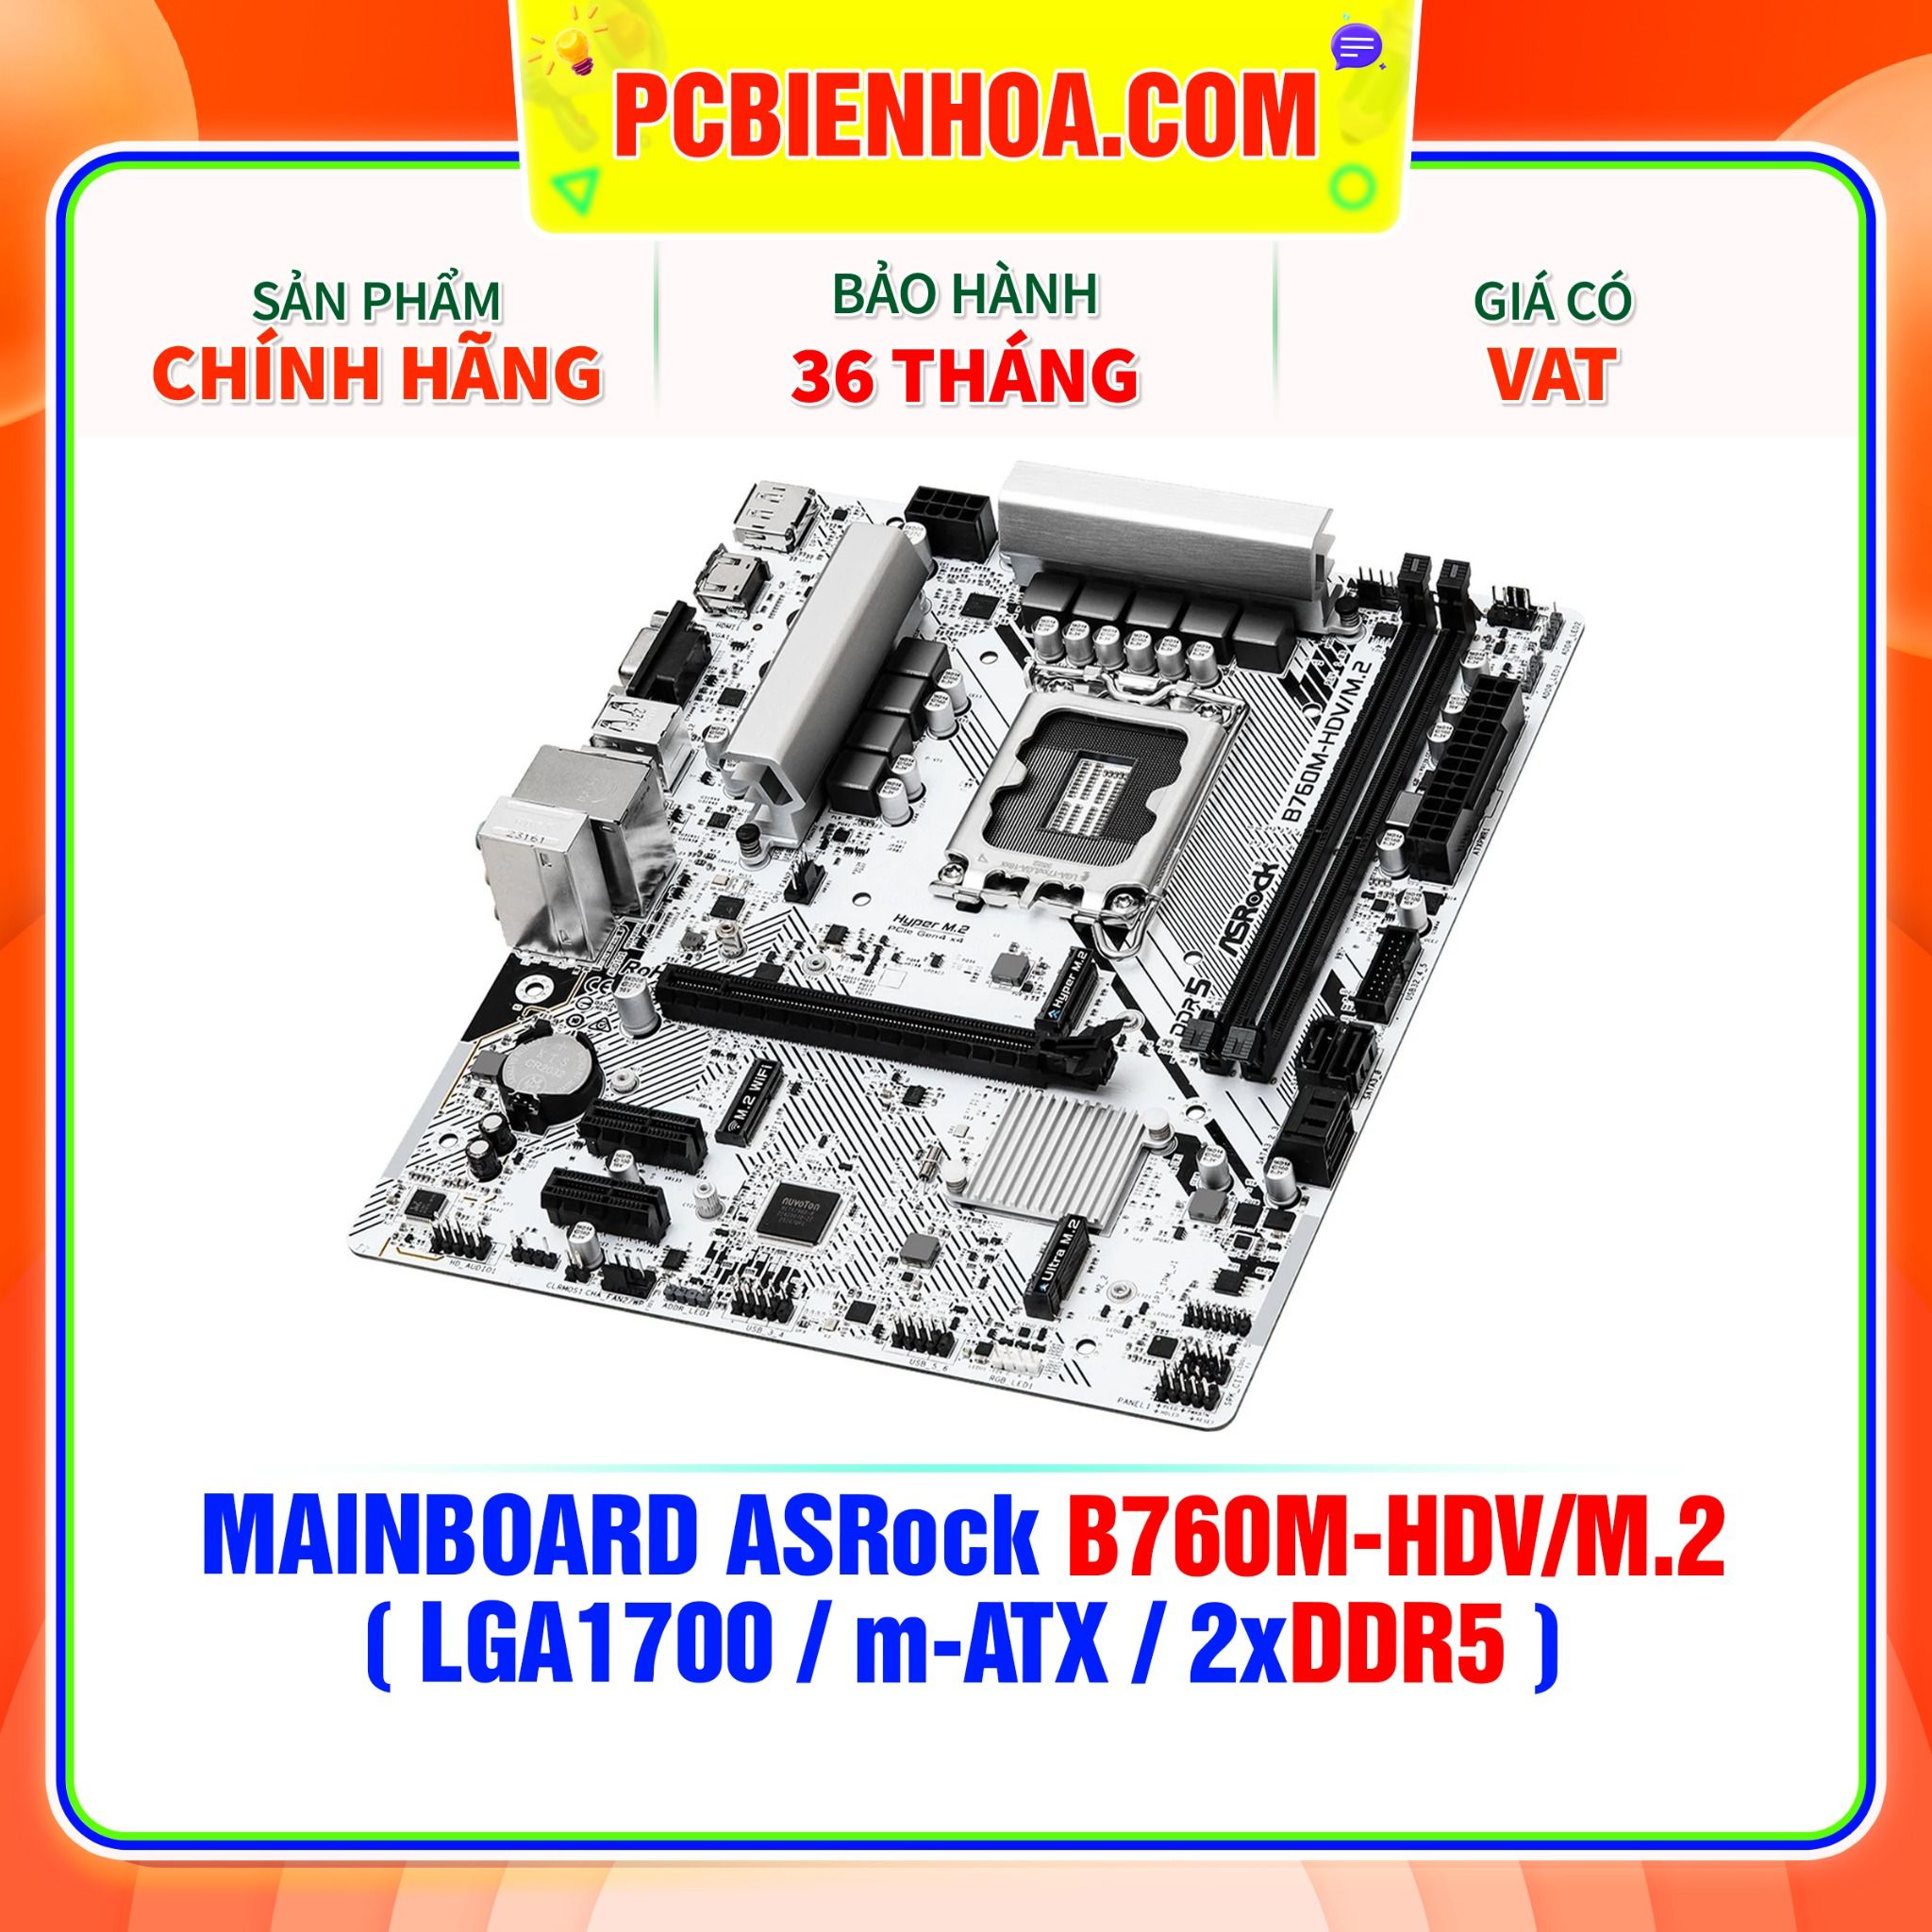  DDR5 - MAINBOARD ASRock B760M-HDV/M.2 ( LGA1700 / M-ATX / 2xDDR5 ) 